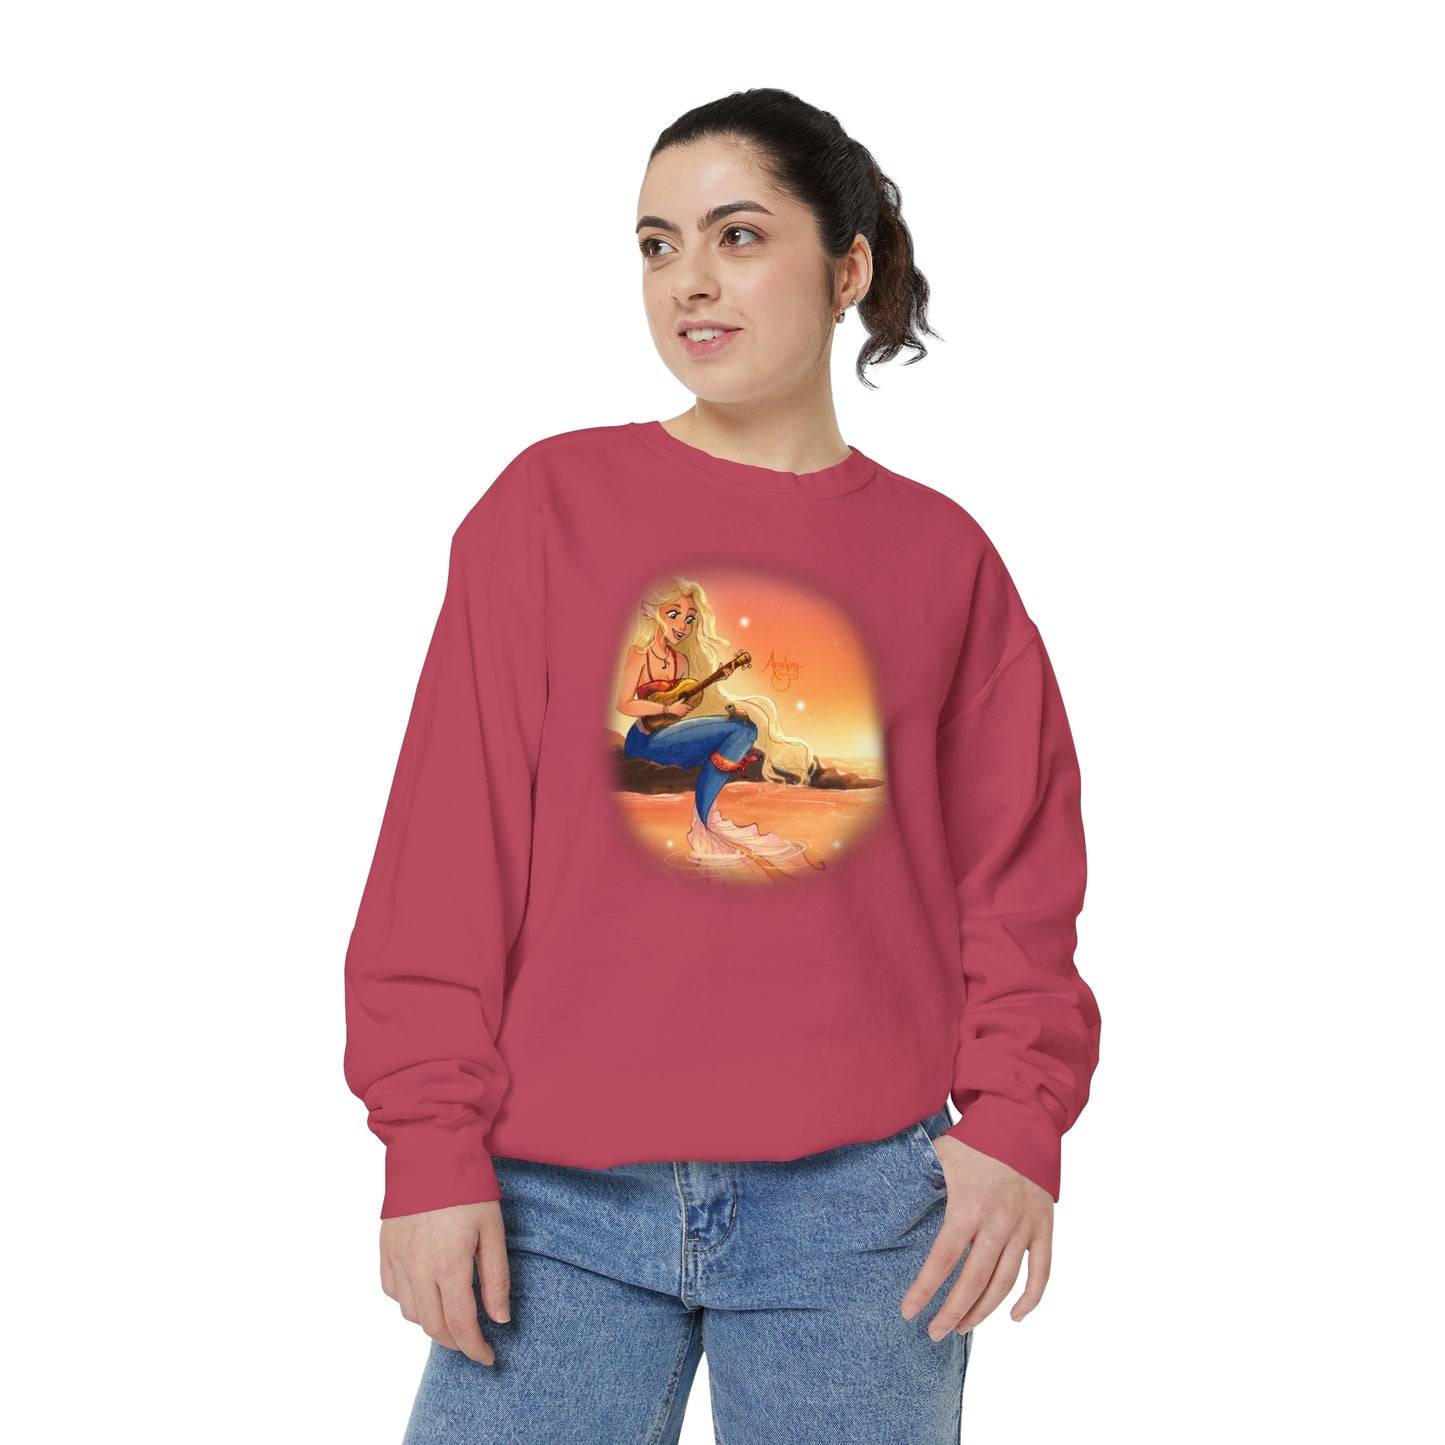 Harmony's Song Crewneck Sweatshirt